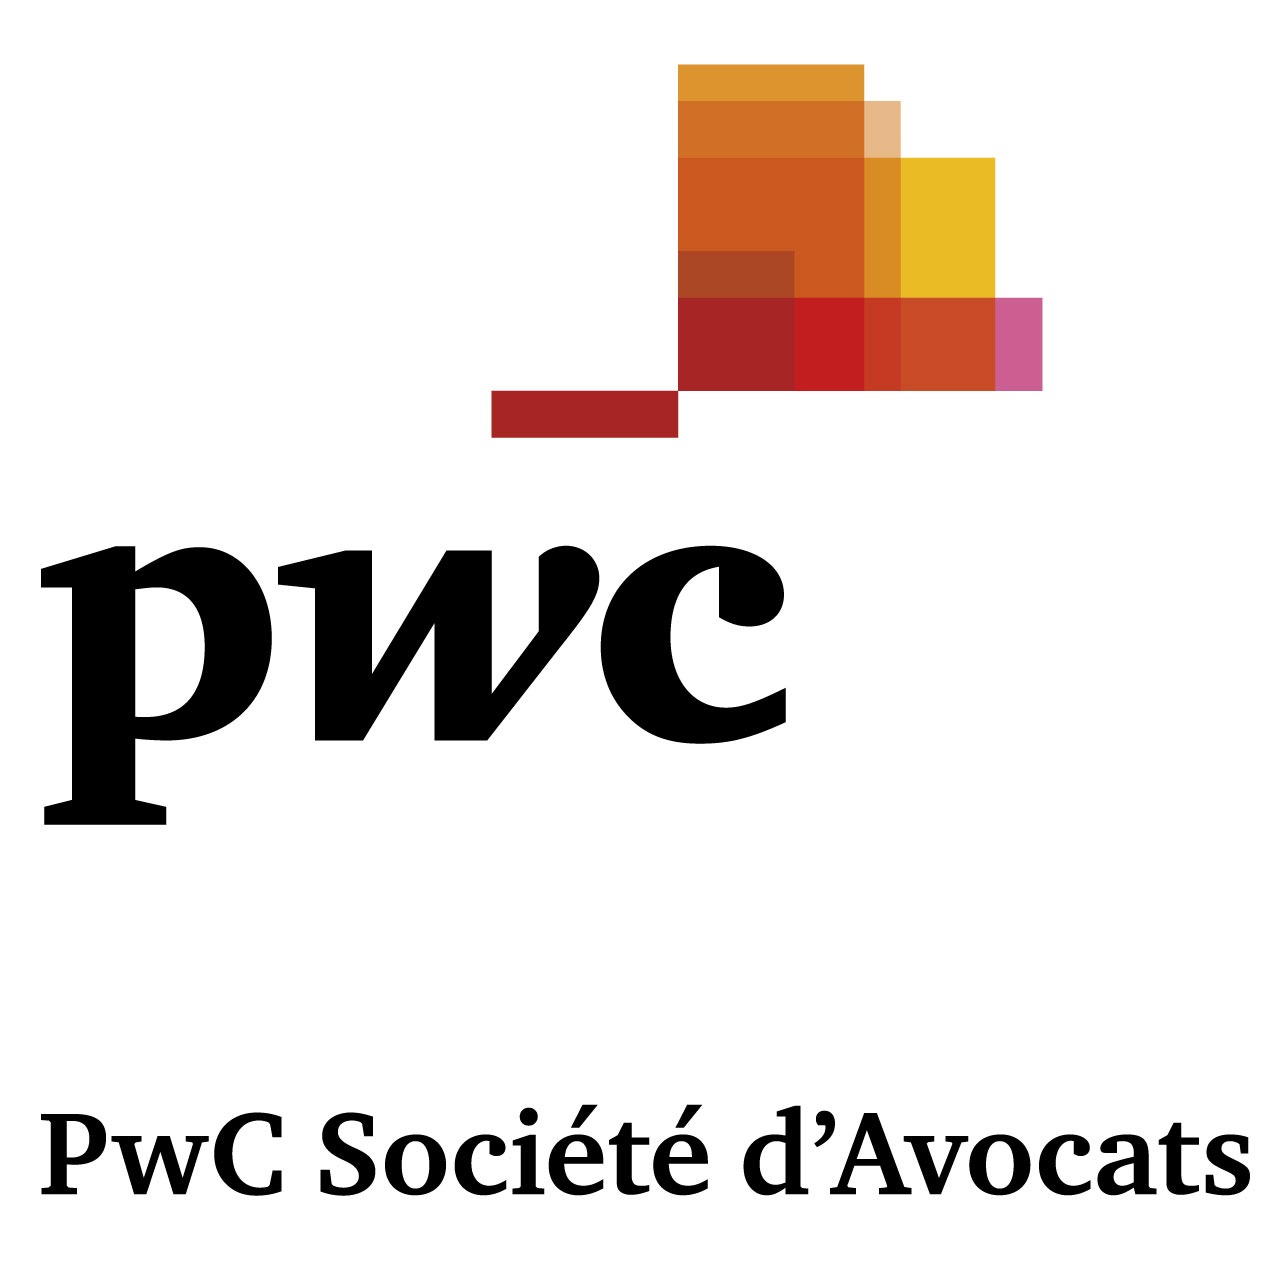 PwC Société d'Avocats